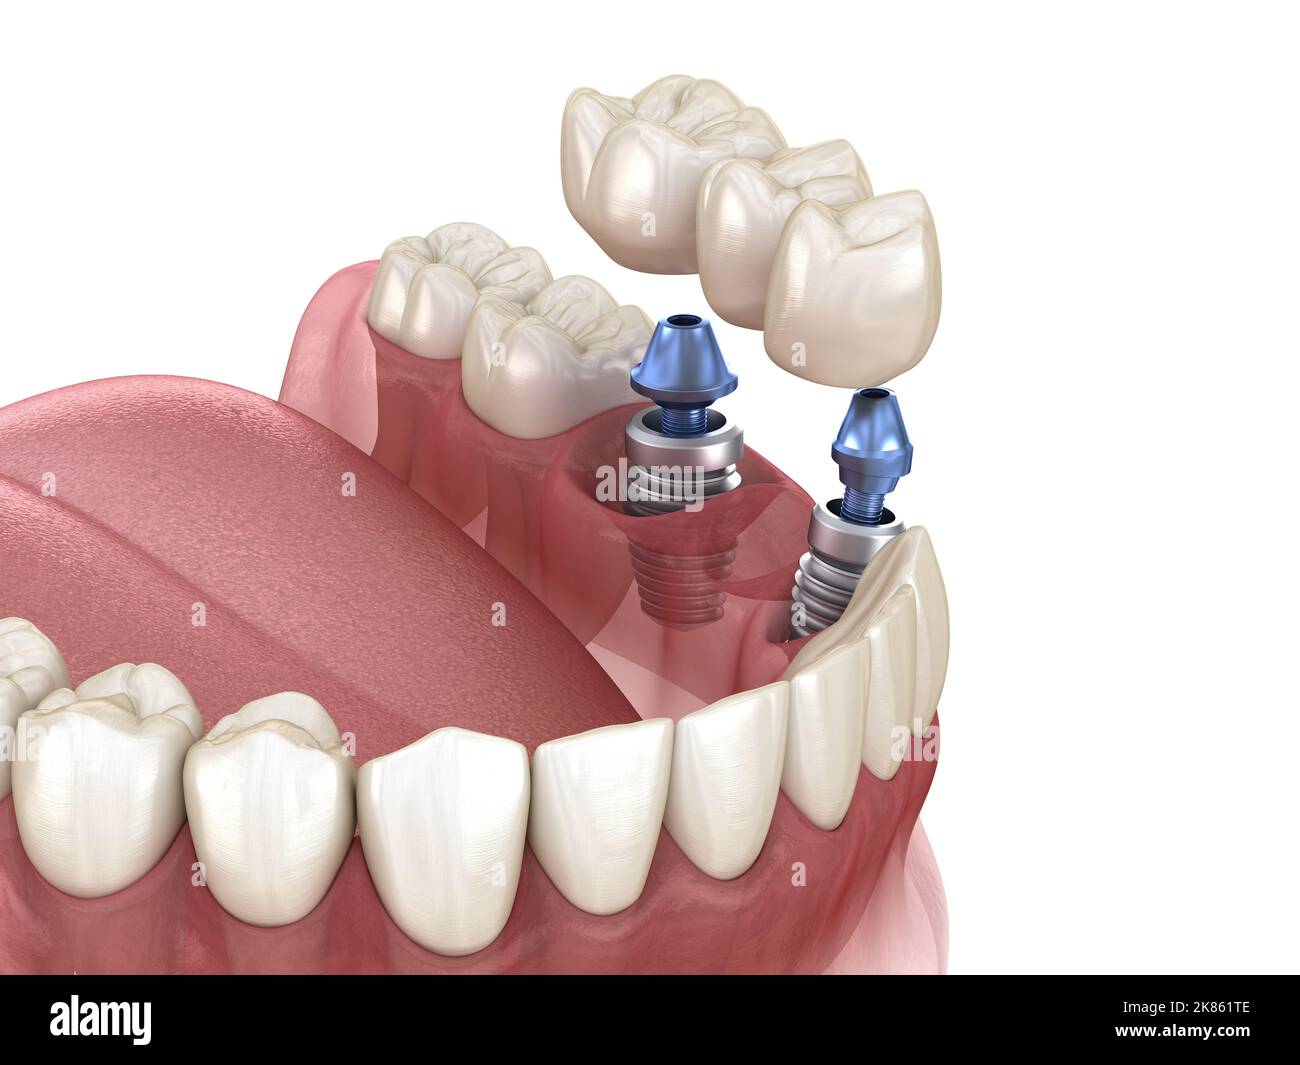 Brücke von Implantaten. Medizinisch genaue 3D-Abbildung der menschlichen Zähne und Zahnersatz Konzept Stockfoto